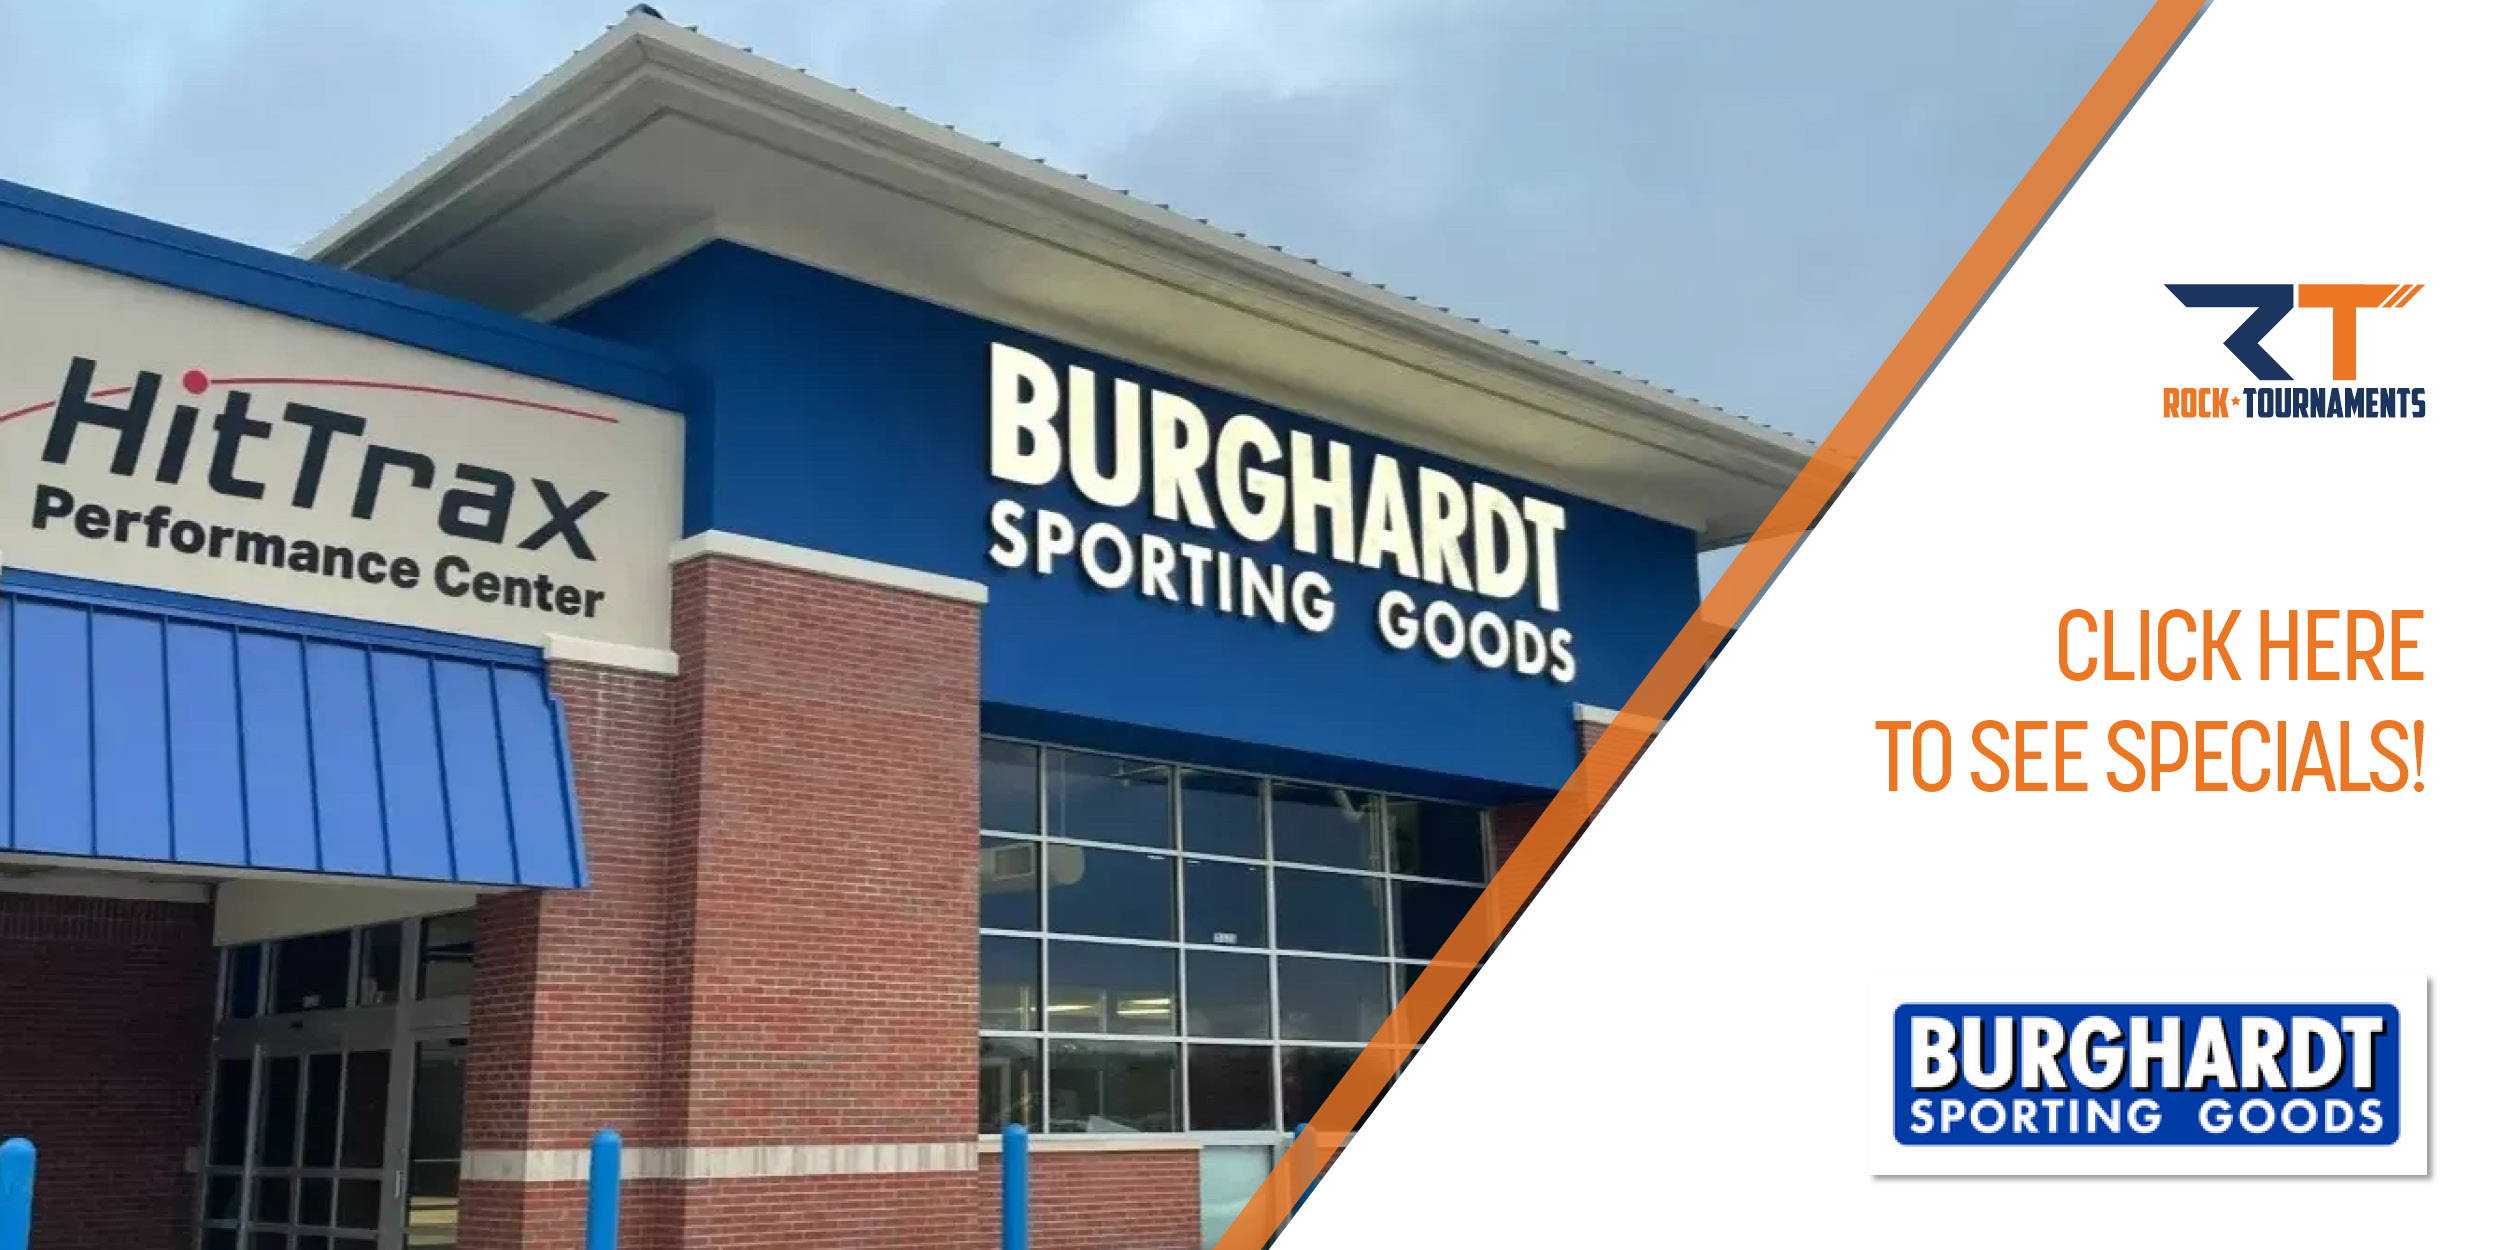 RT Sponsor - Burghardt Sporting Goods